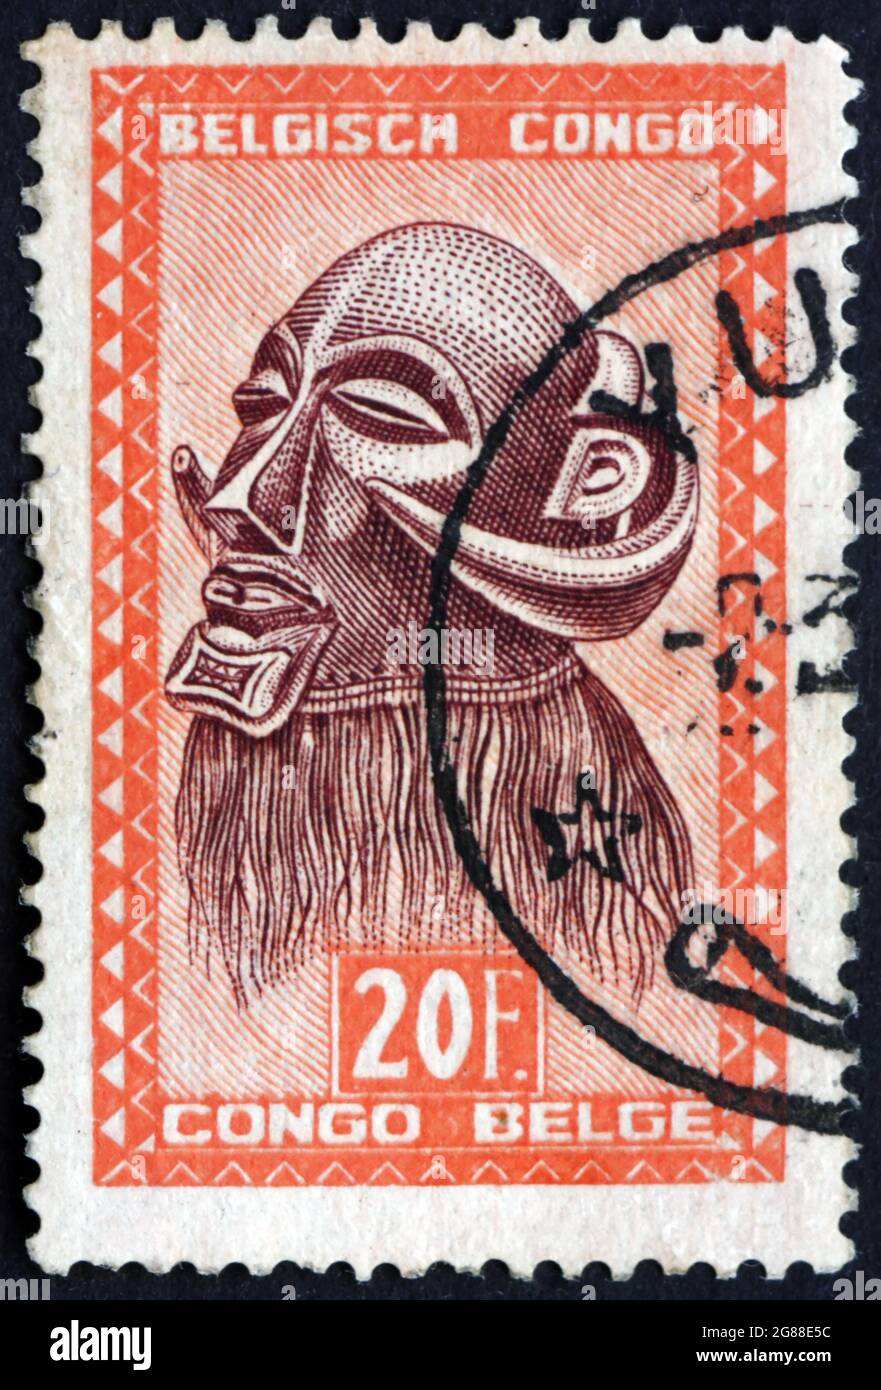 CONGO BELGE - VERS 1948 : un timbre imprimé au Congo belge montre Mbowa, masque du bourreau avec cornes de buffle, tribu Baluba, vers 1948 Banque D'Images